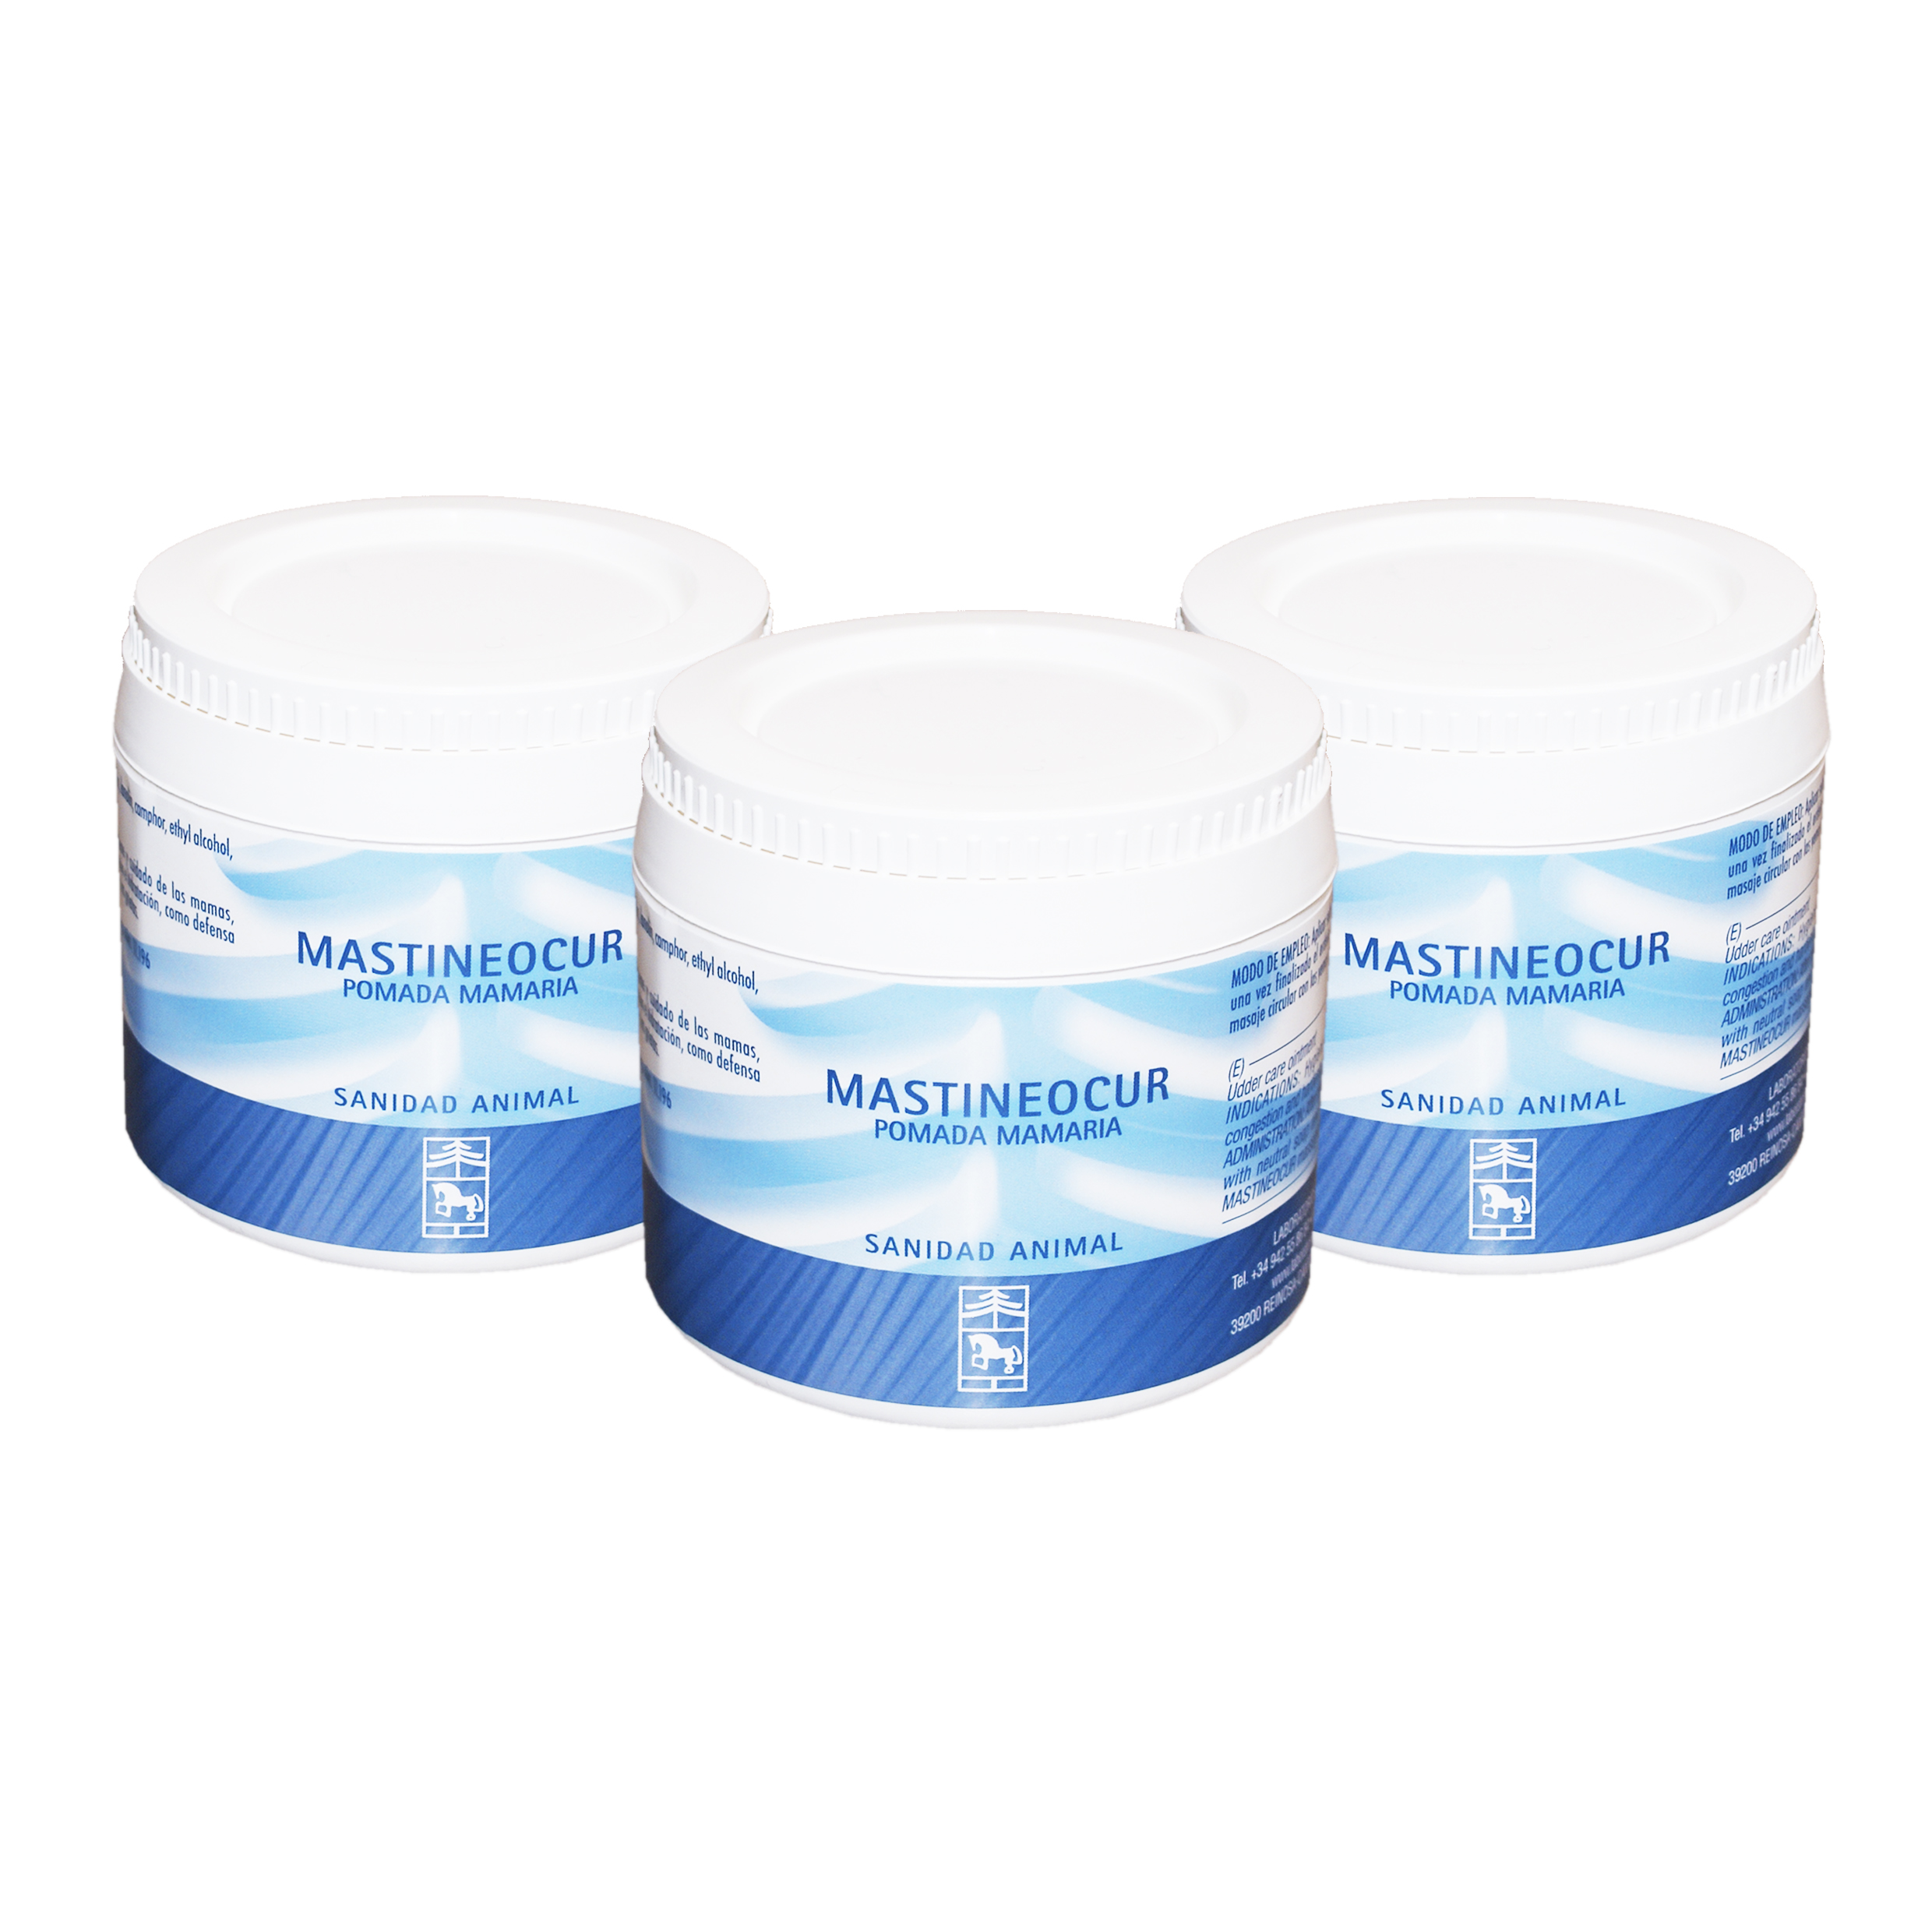 Mastineocur crema mamaria | Comprar Online en Laboratorios Pino